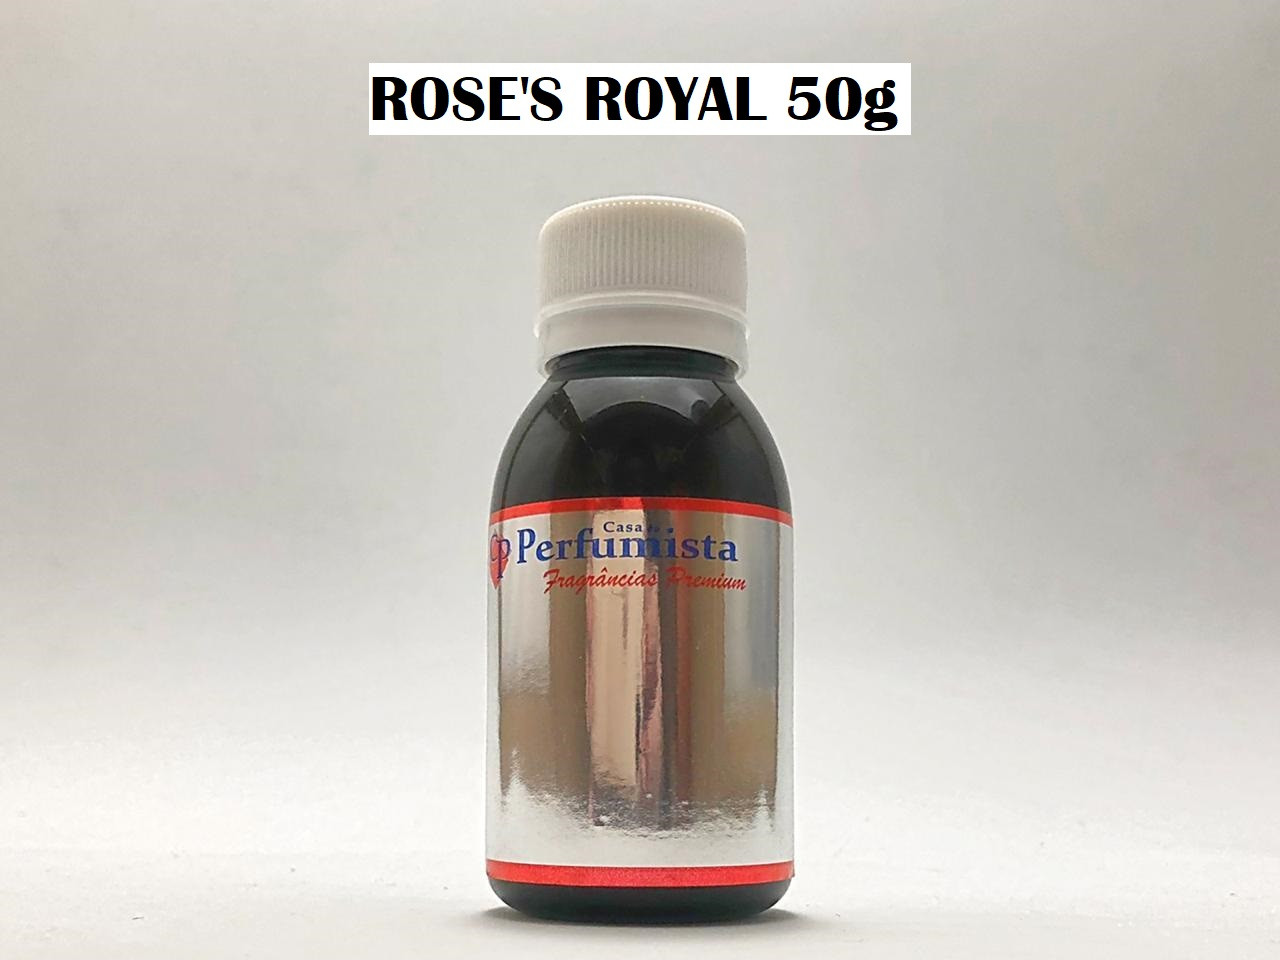 ROSE'S ROYAL 50g - Inspiração: Rouge Royal Feminino 